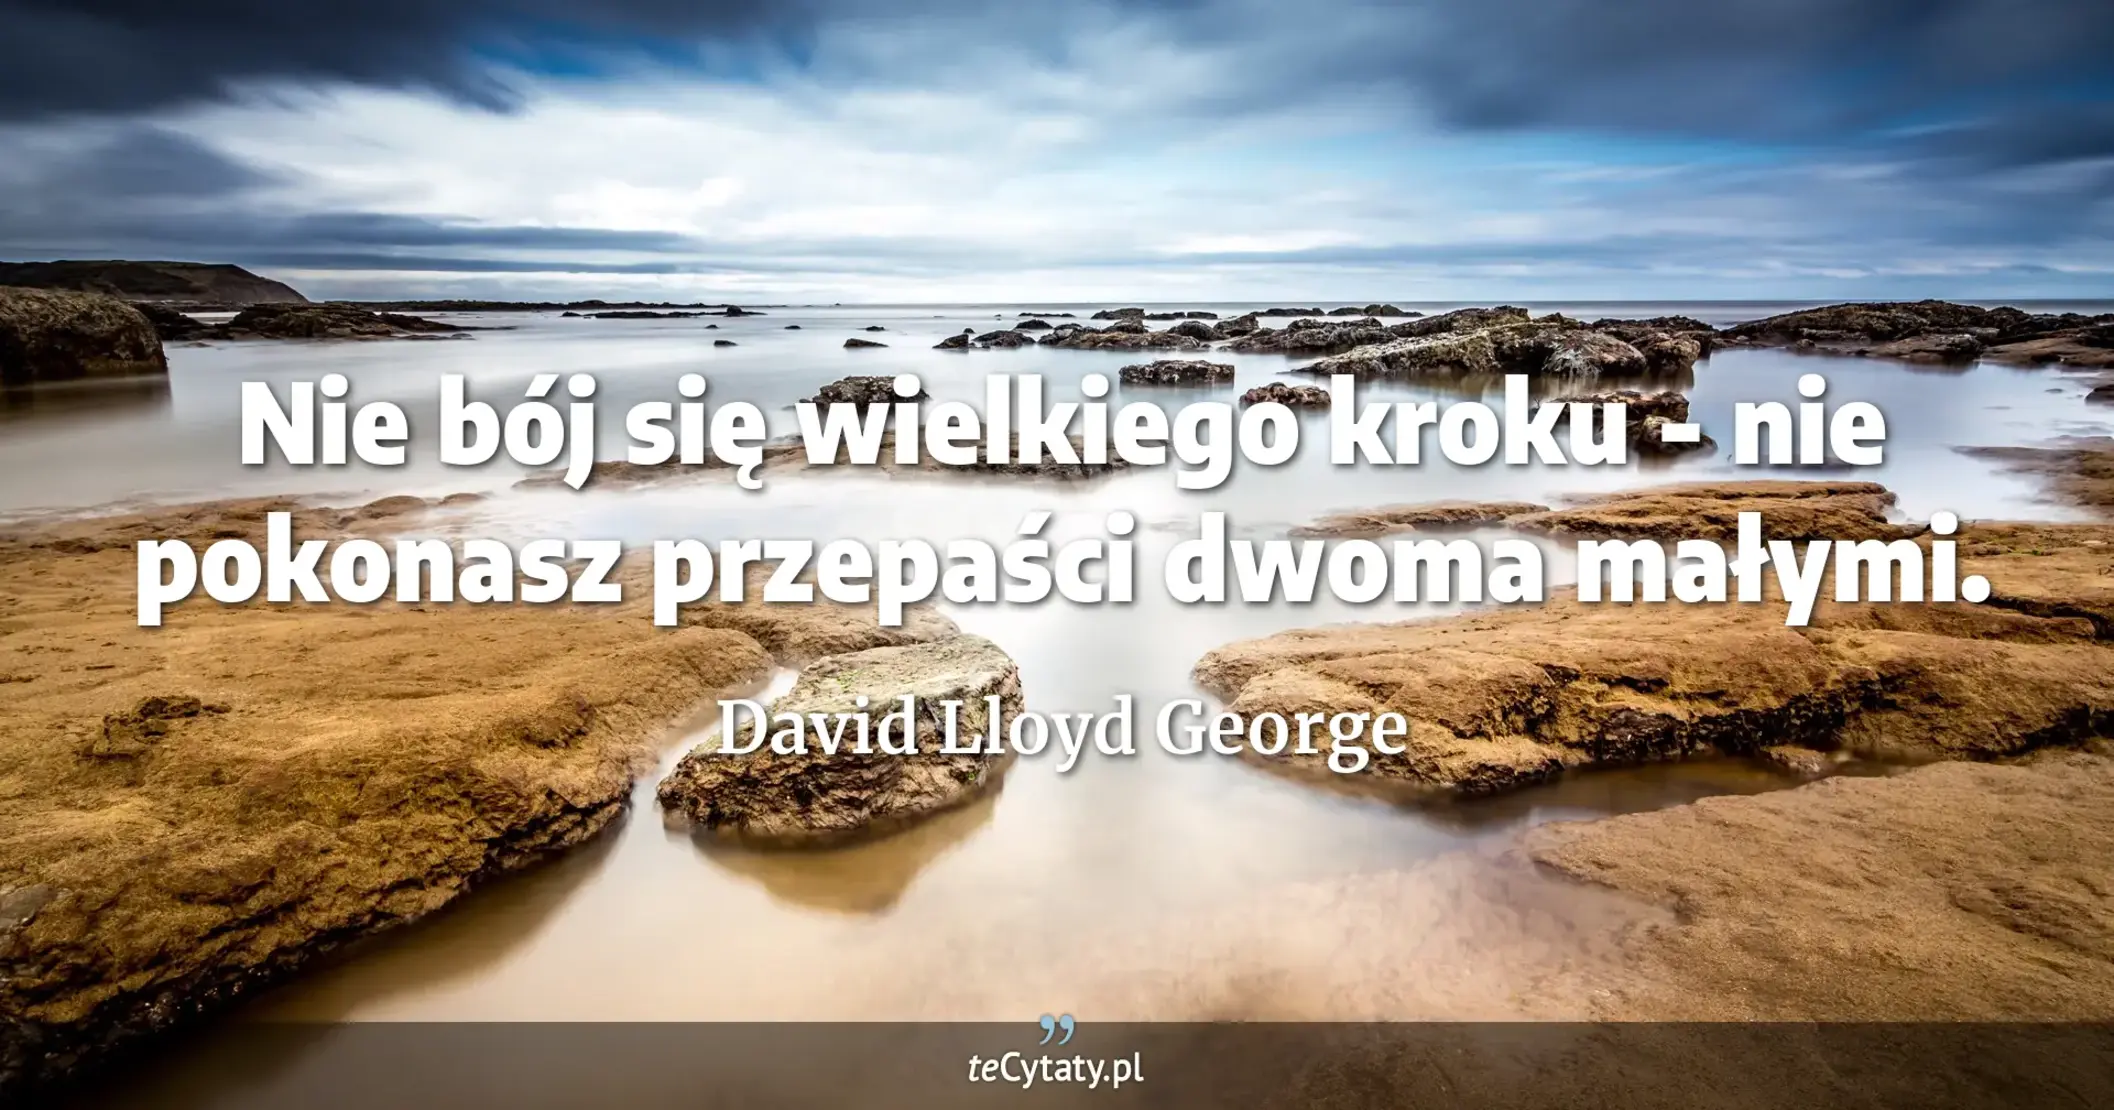 Nie bój się wielkiego kroku - nie pokonasz przepaści dwoma małymi. - David Lloyd George